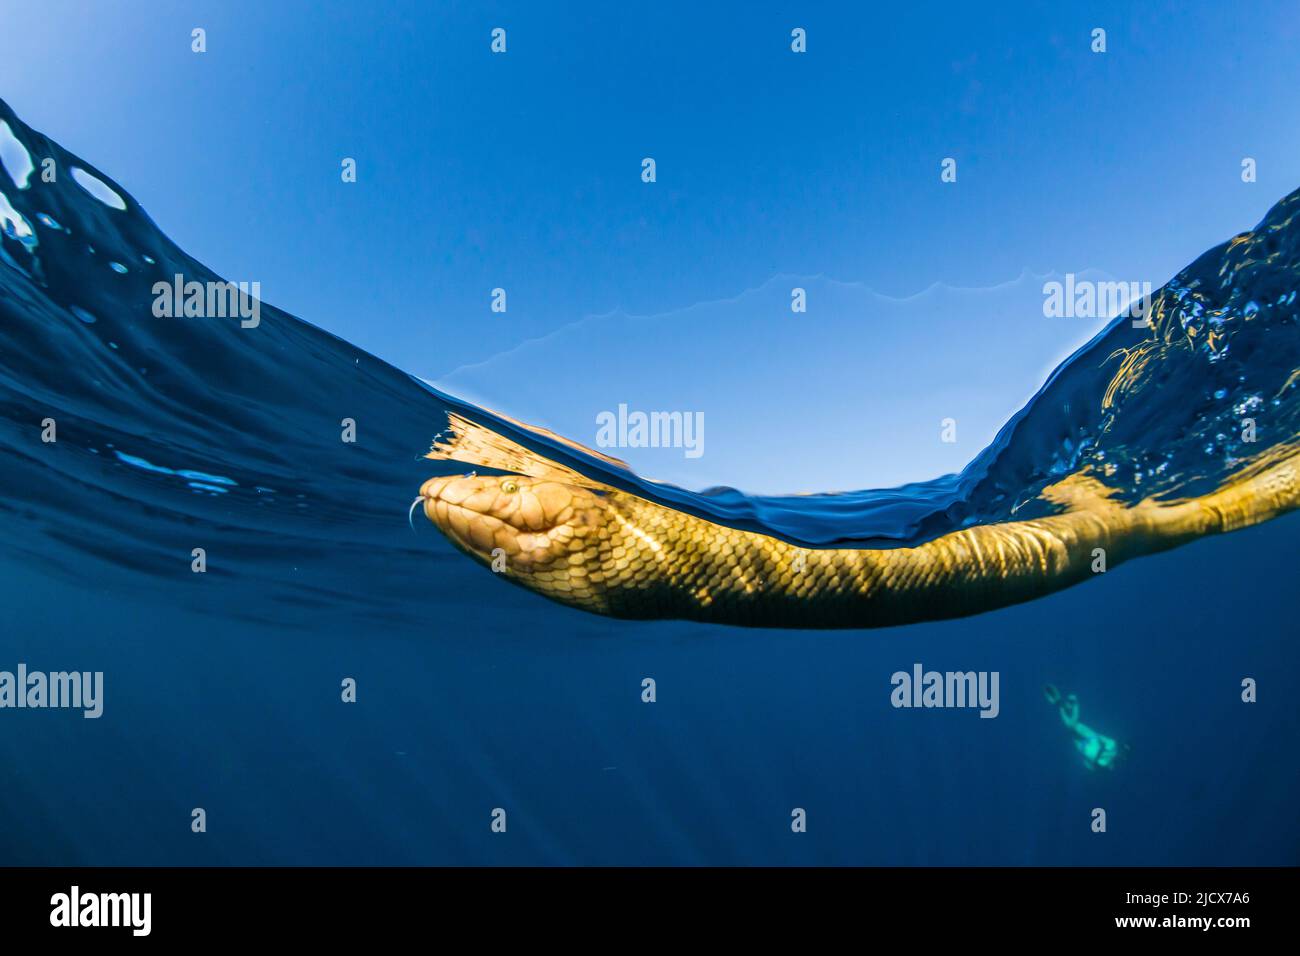 Serpiente de mar con cabeza de oliva para adultos (Hydrophis Major), natación en el arrecife de Ningaloo, Australia Occidental, Australia, Pacífico Foto de stock